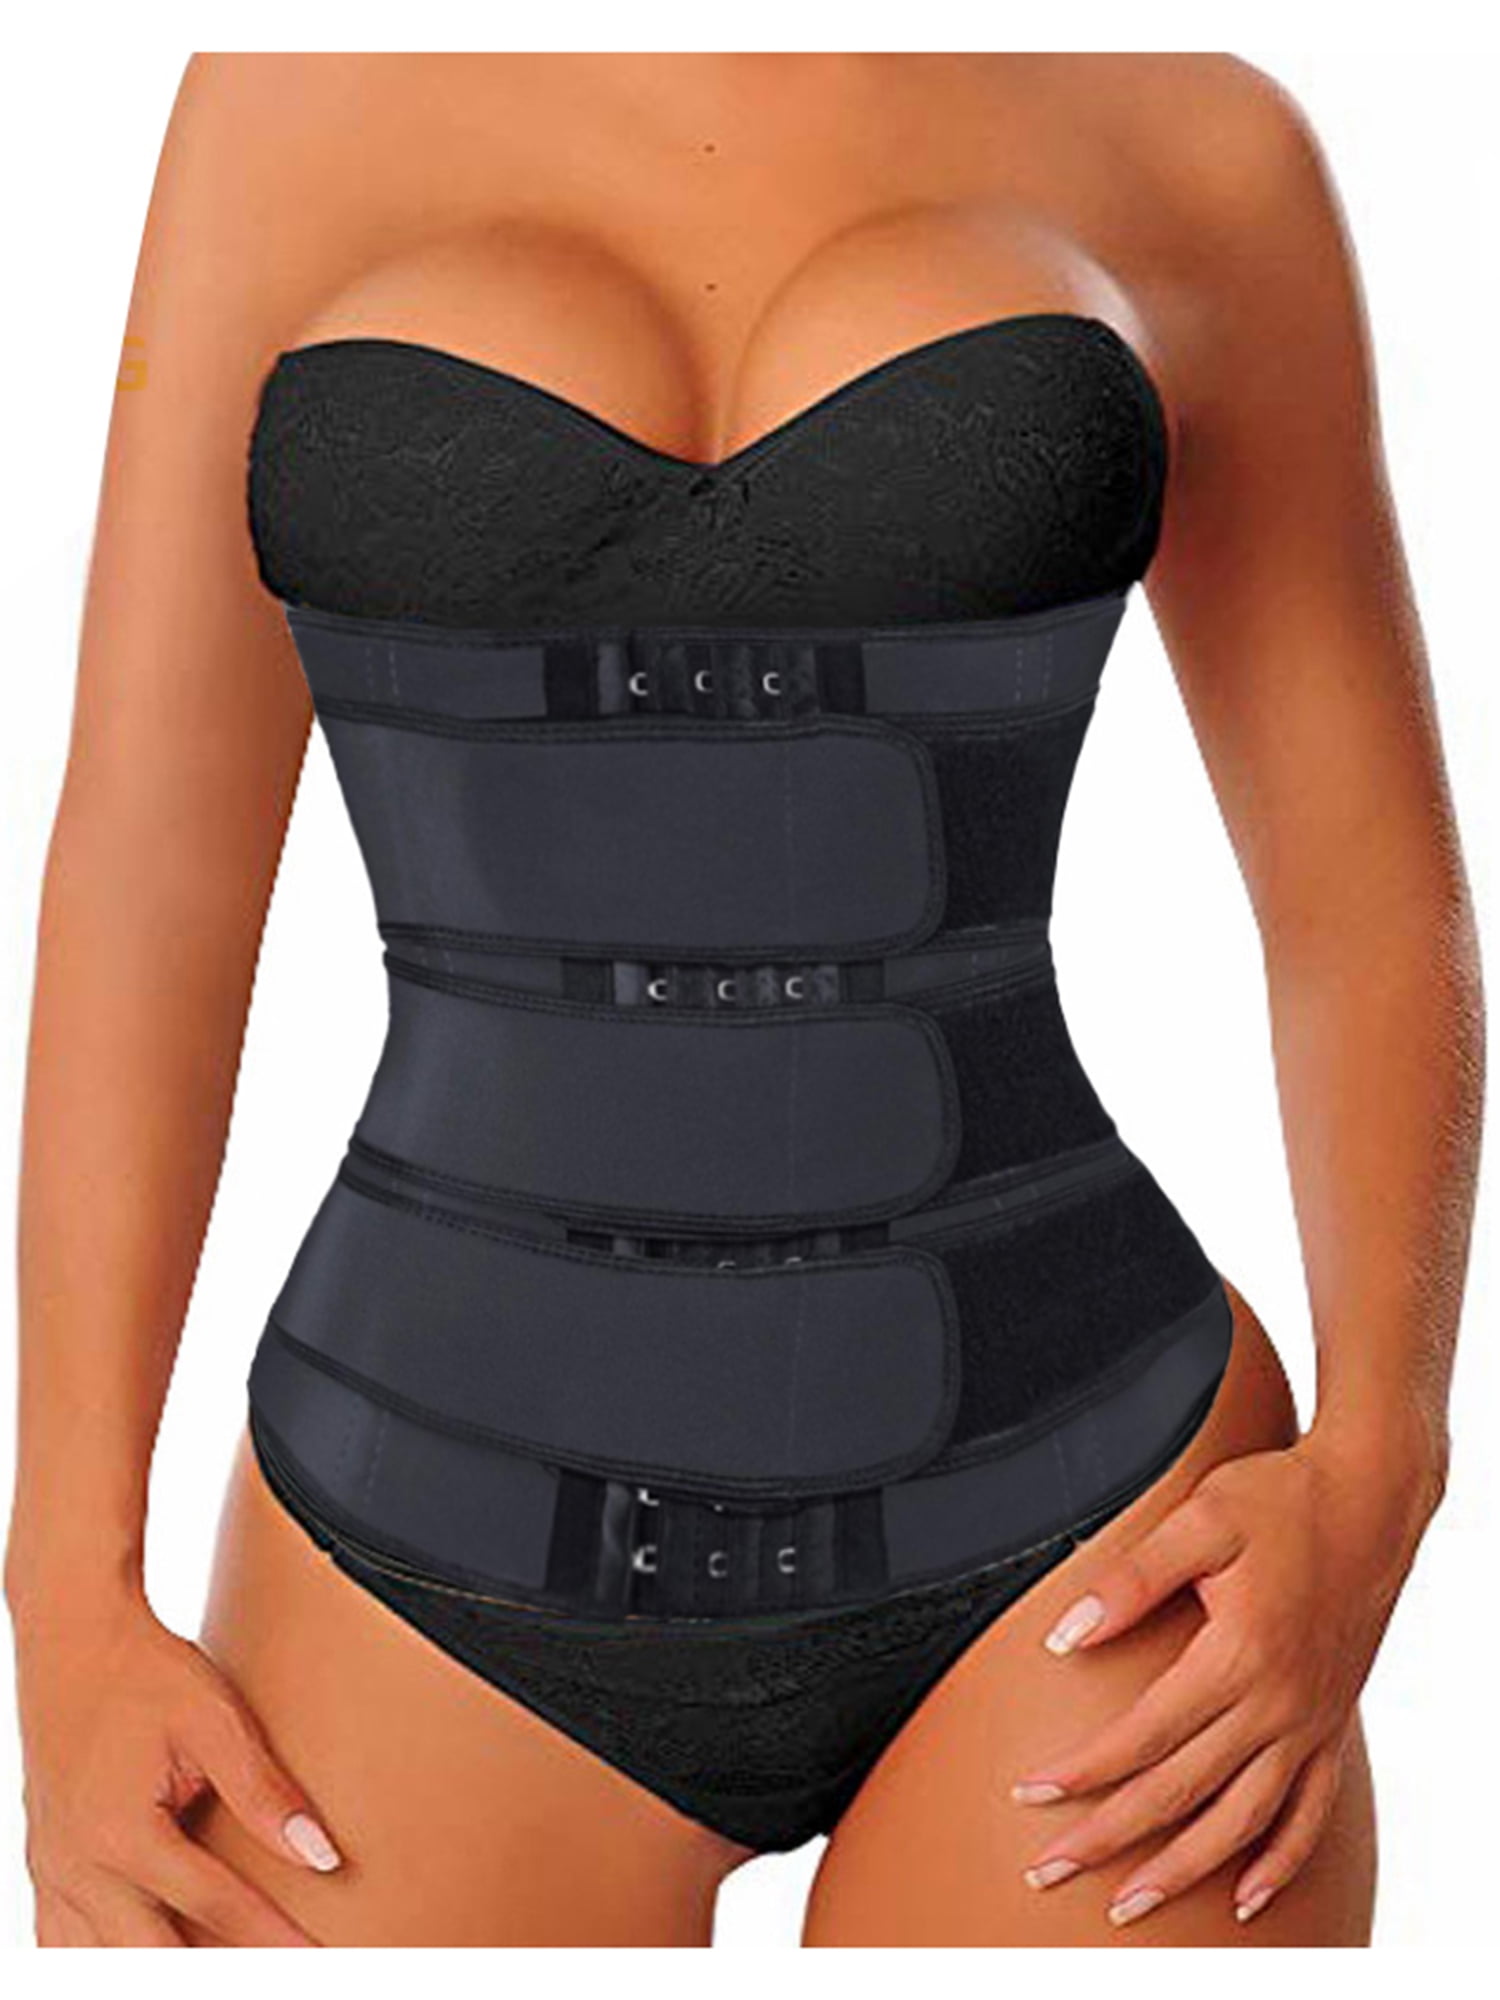 Kakaly Womens Waist Trainer Corset Trimmer Belt for Weight Loss Slimming Waist Sweat Shaper Sauna Tummy Cincher Girdle Steel Boned Underwear for Gym